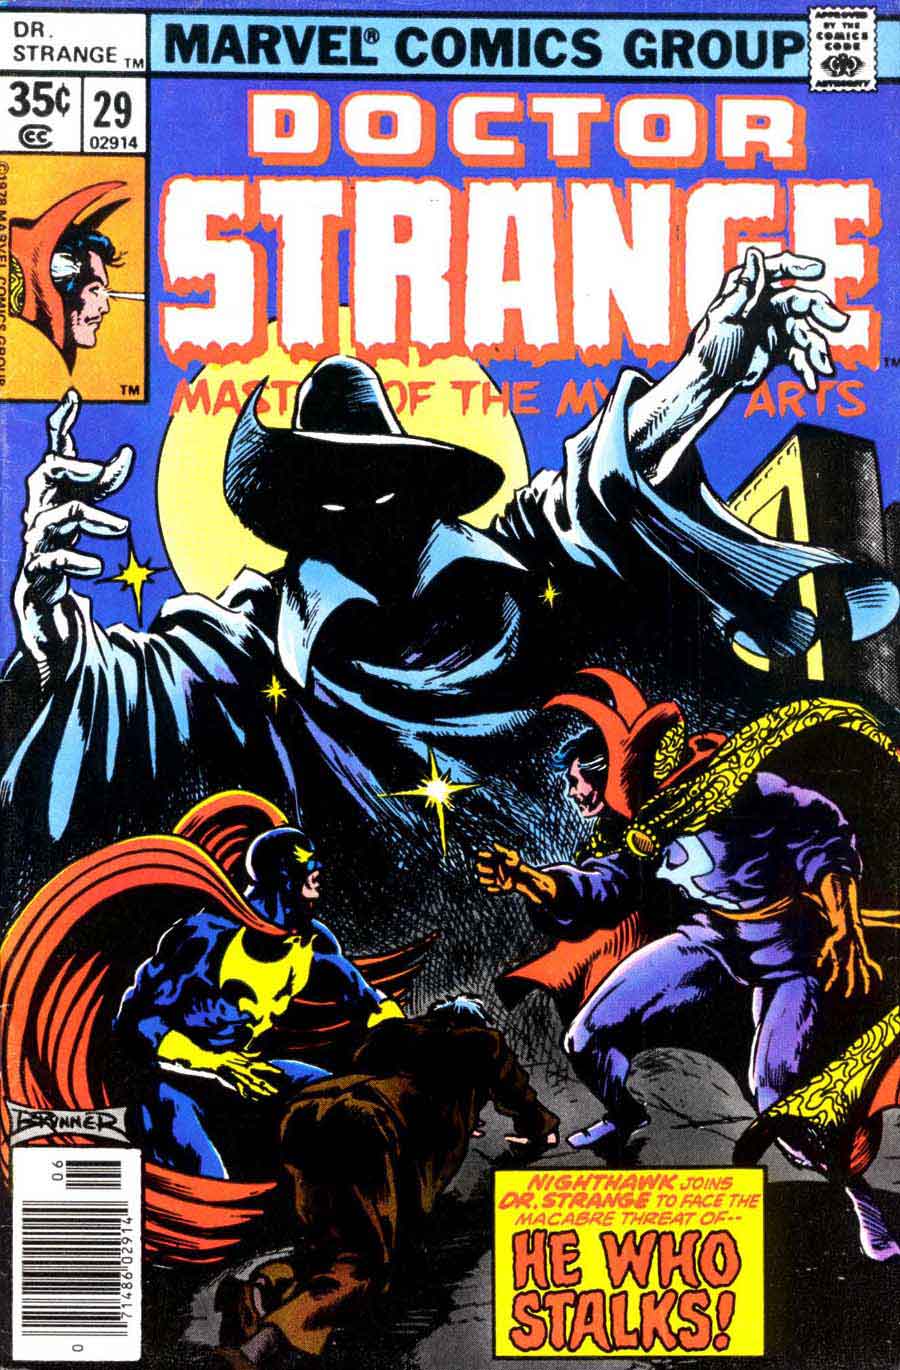 Frank Brunner  bronze age 1970s marvel comic book cover art - Doctor Strange v2 #29